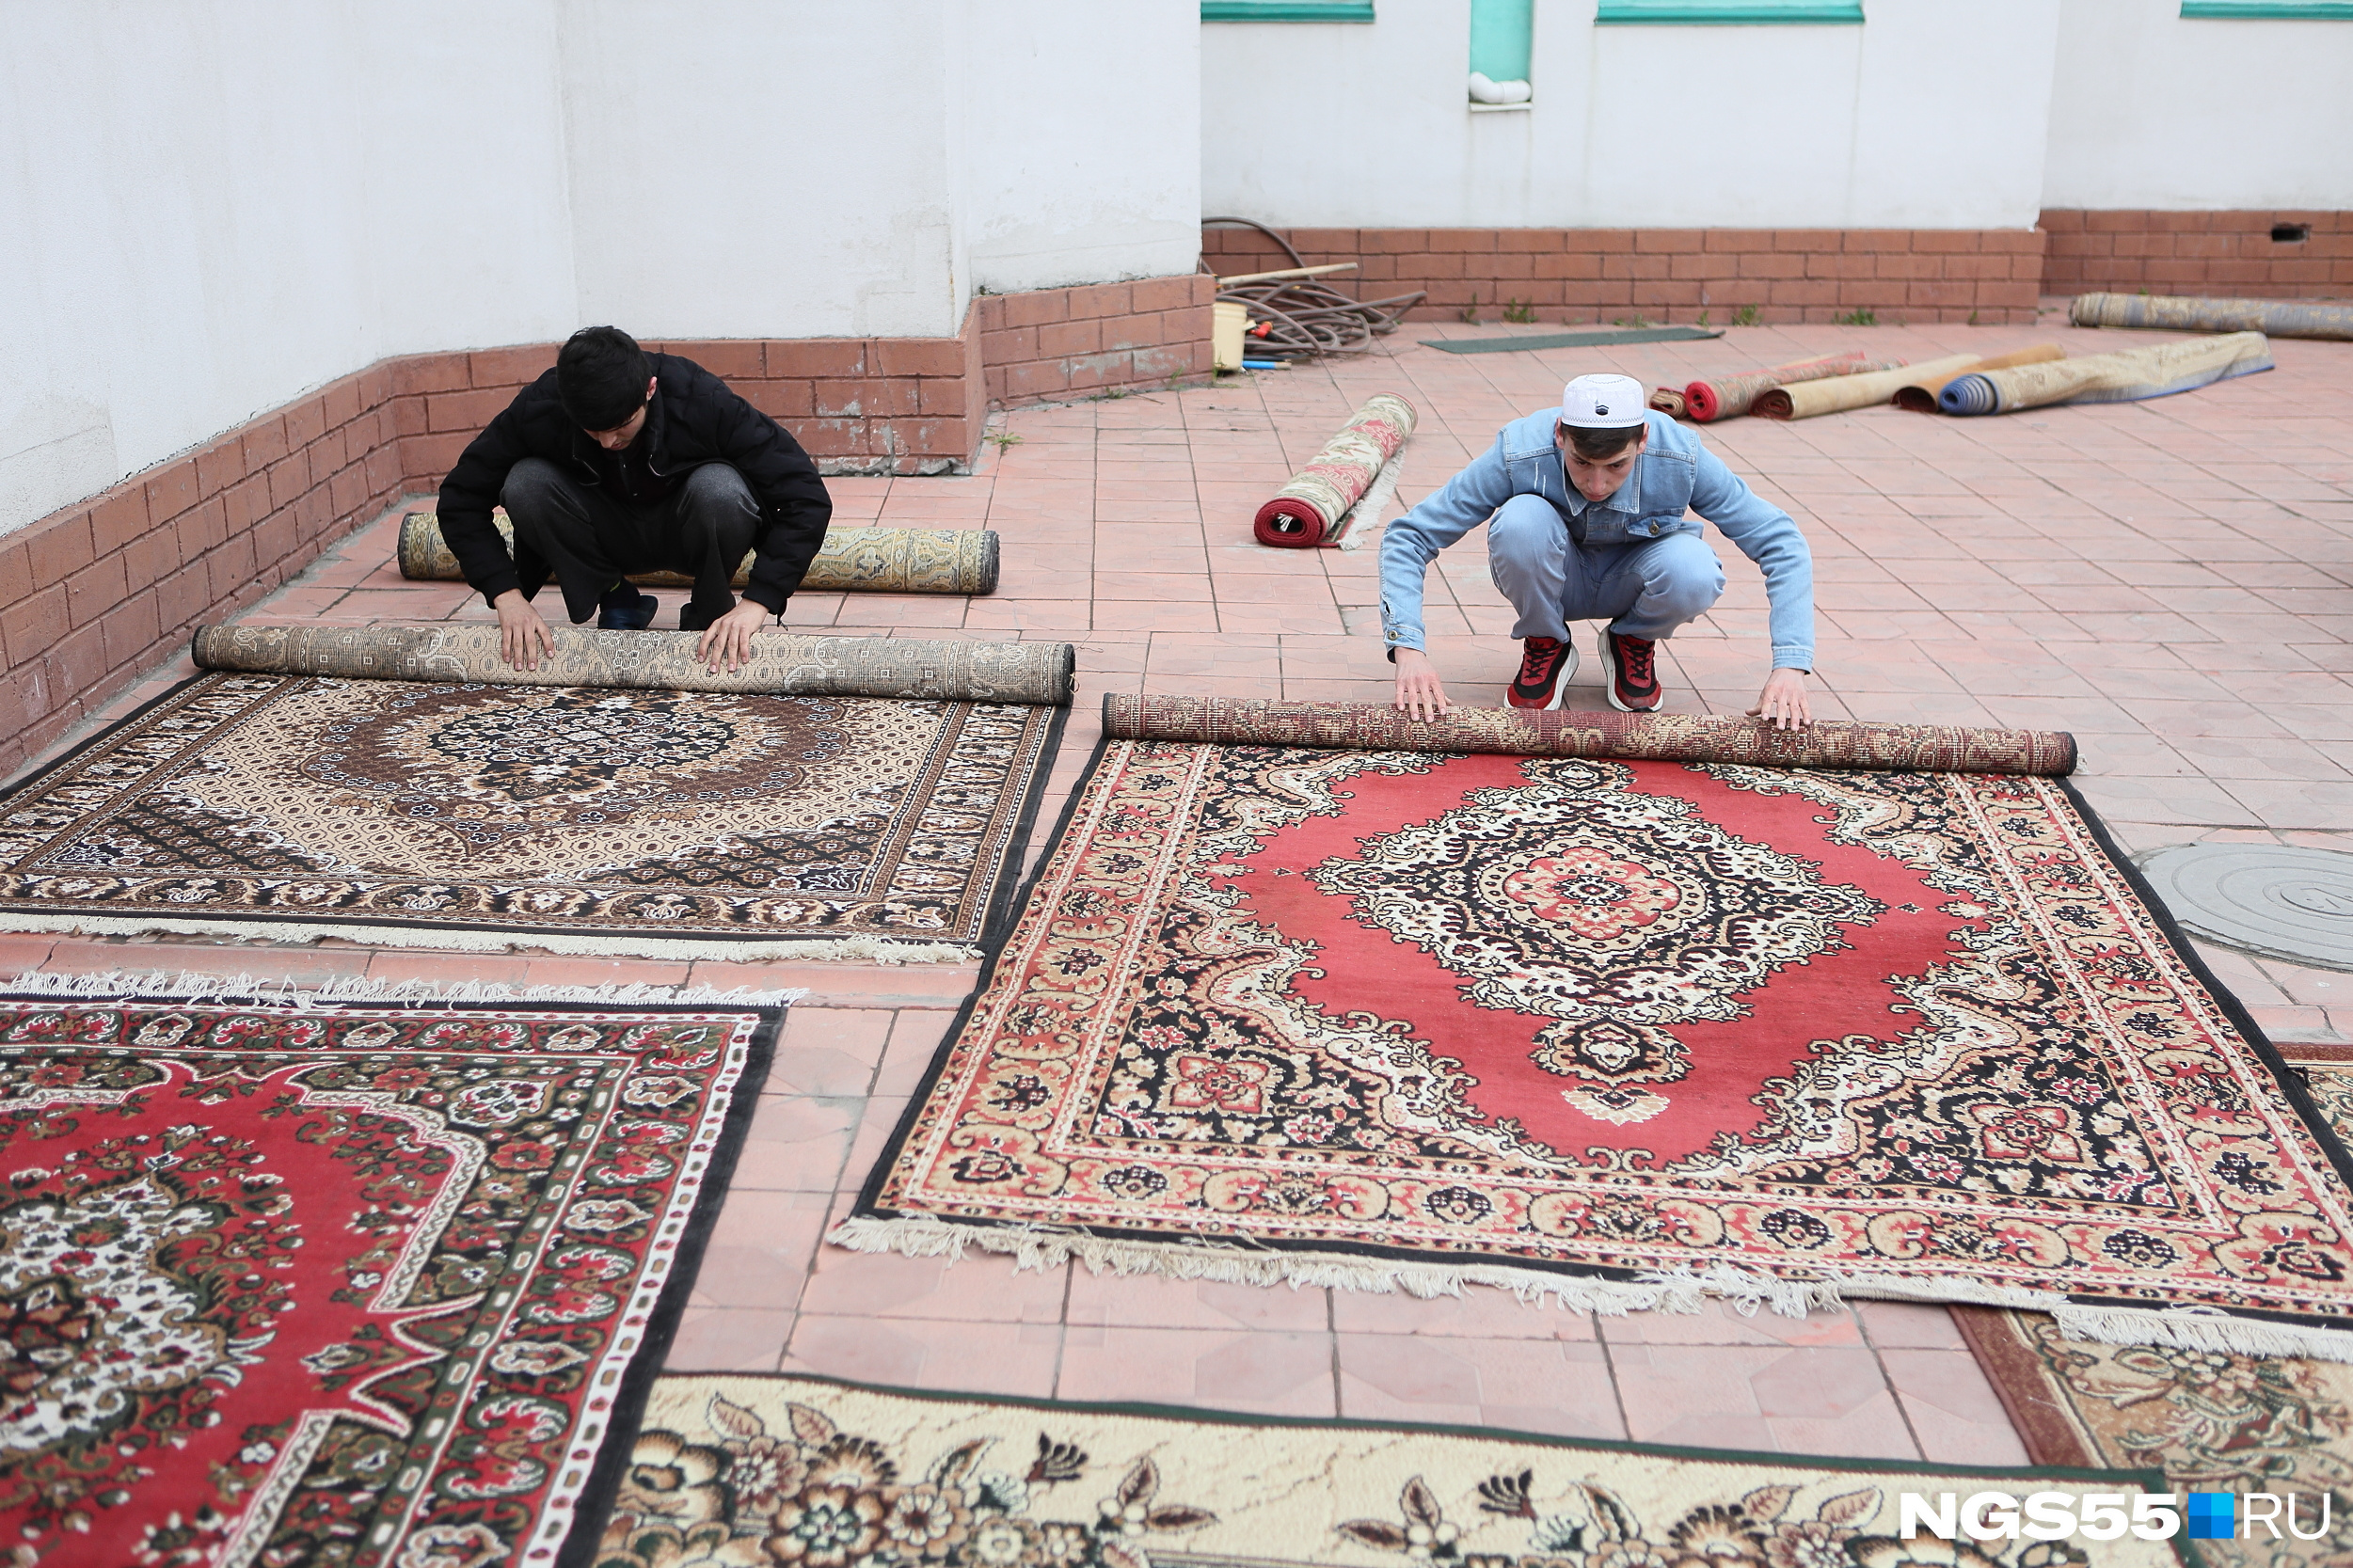 После завершения молитвы верующие сворачивали ковры